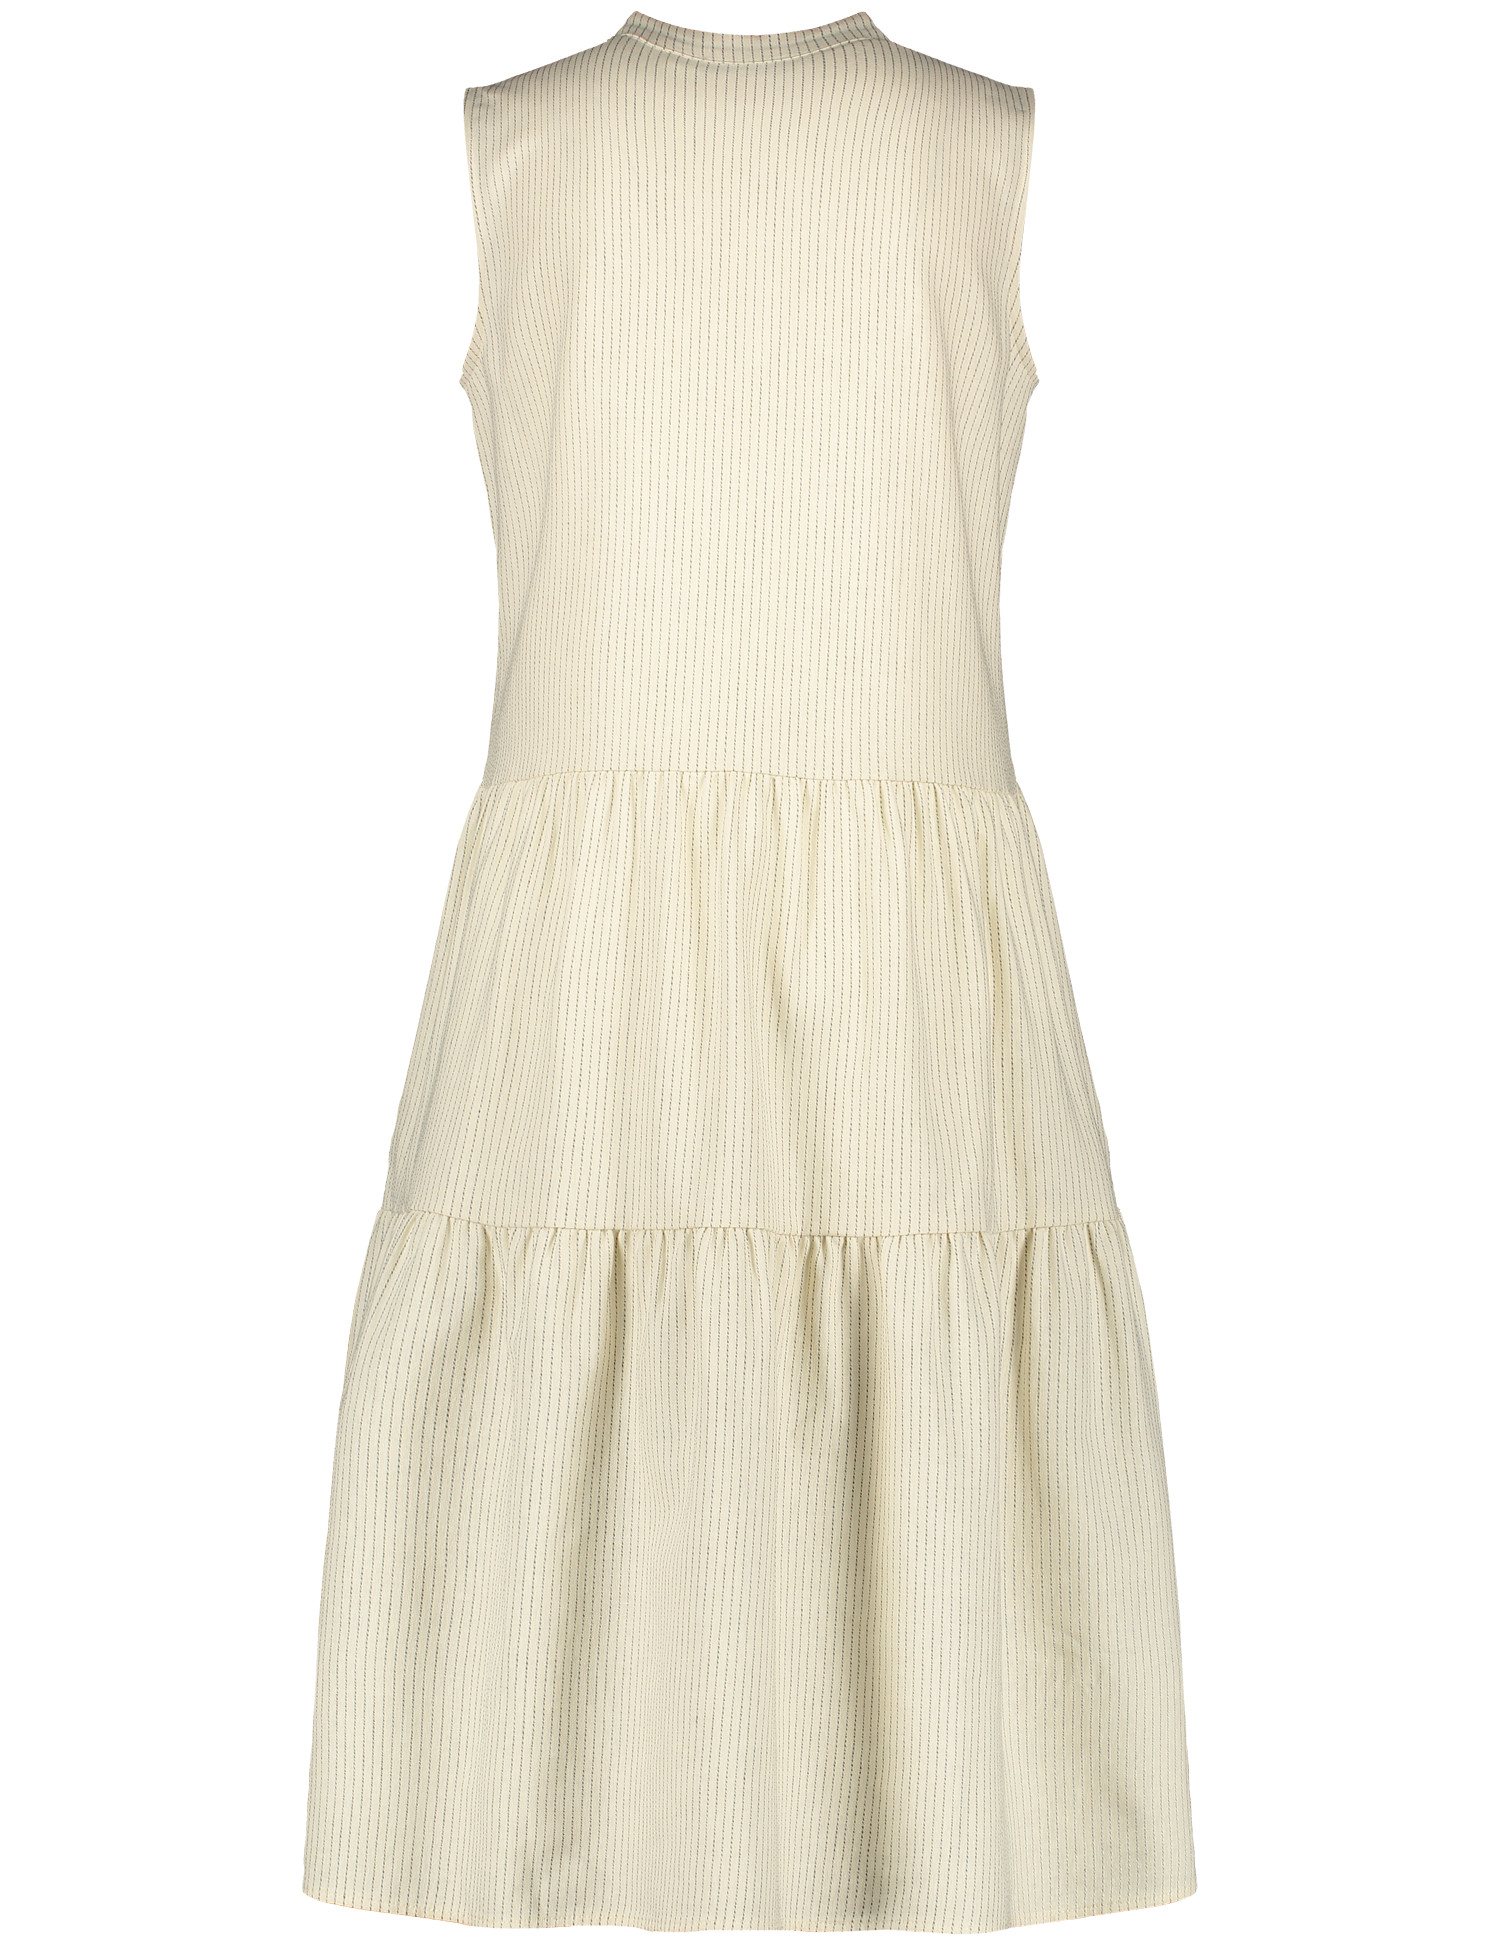 ärmelloses Sommerkleid aus Baumwoll-Leinen-Mix mit Streifenmuster